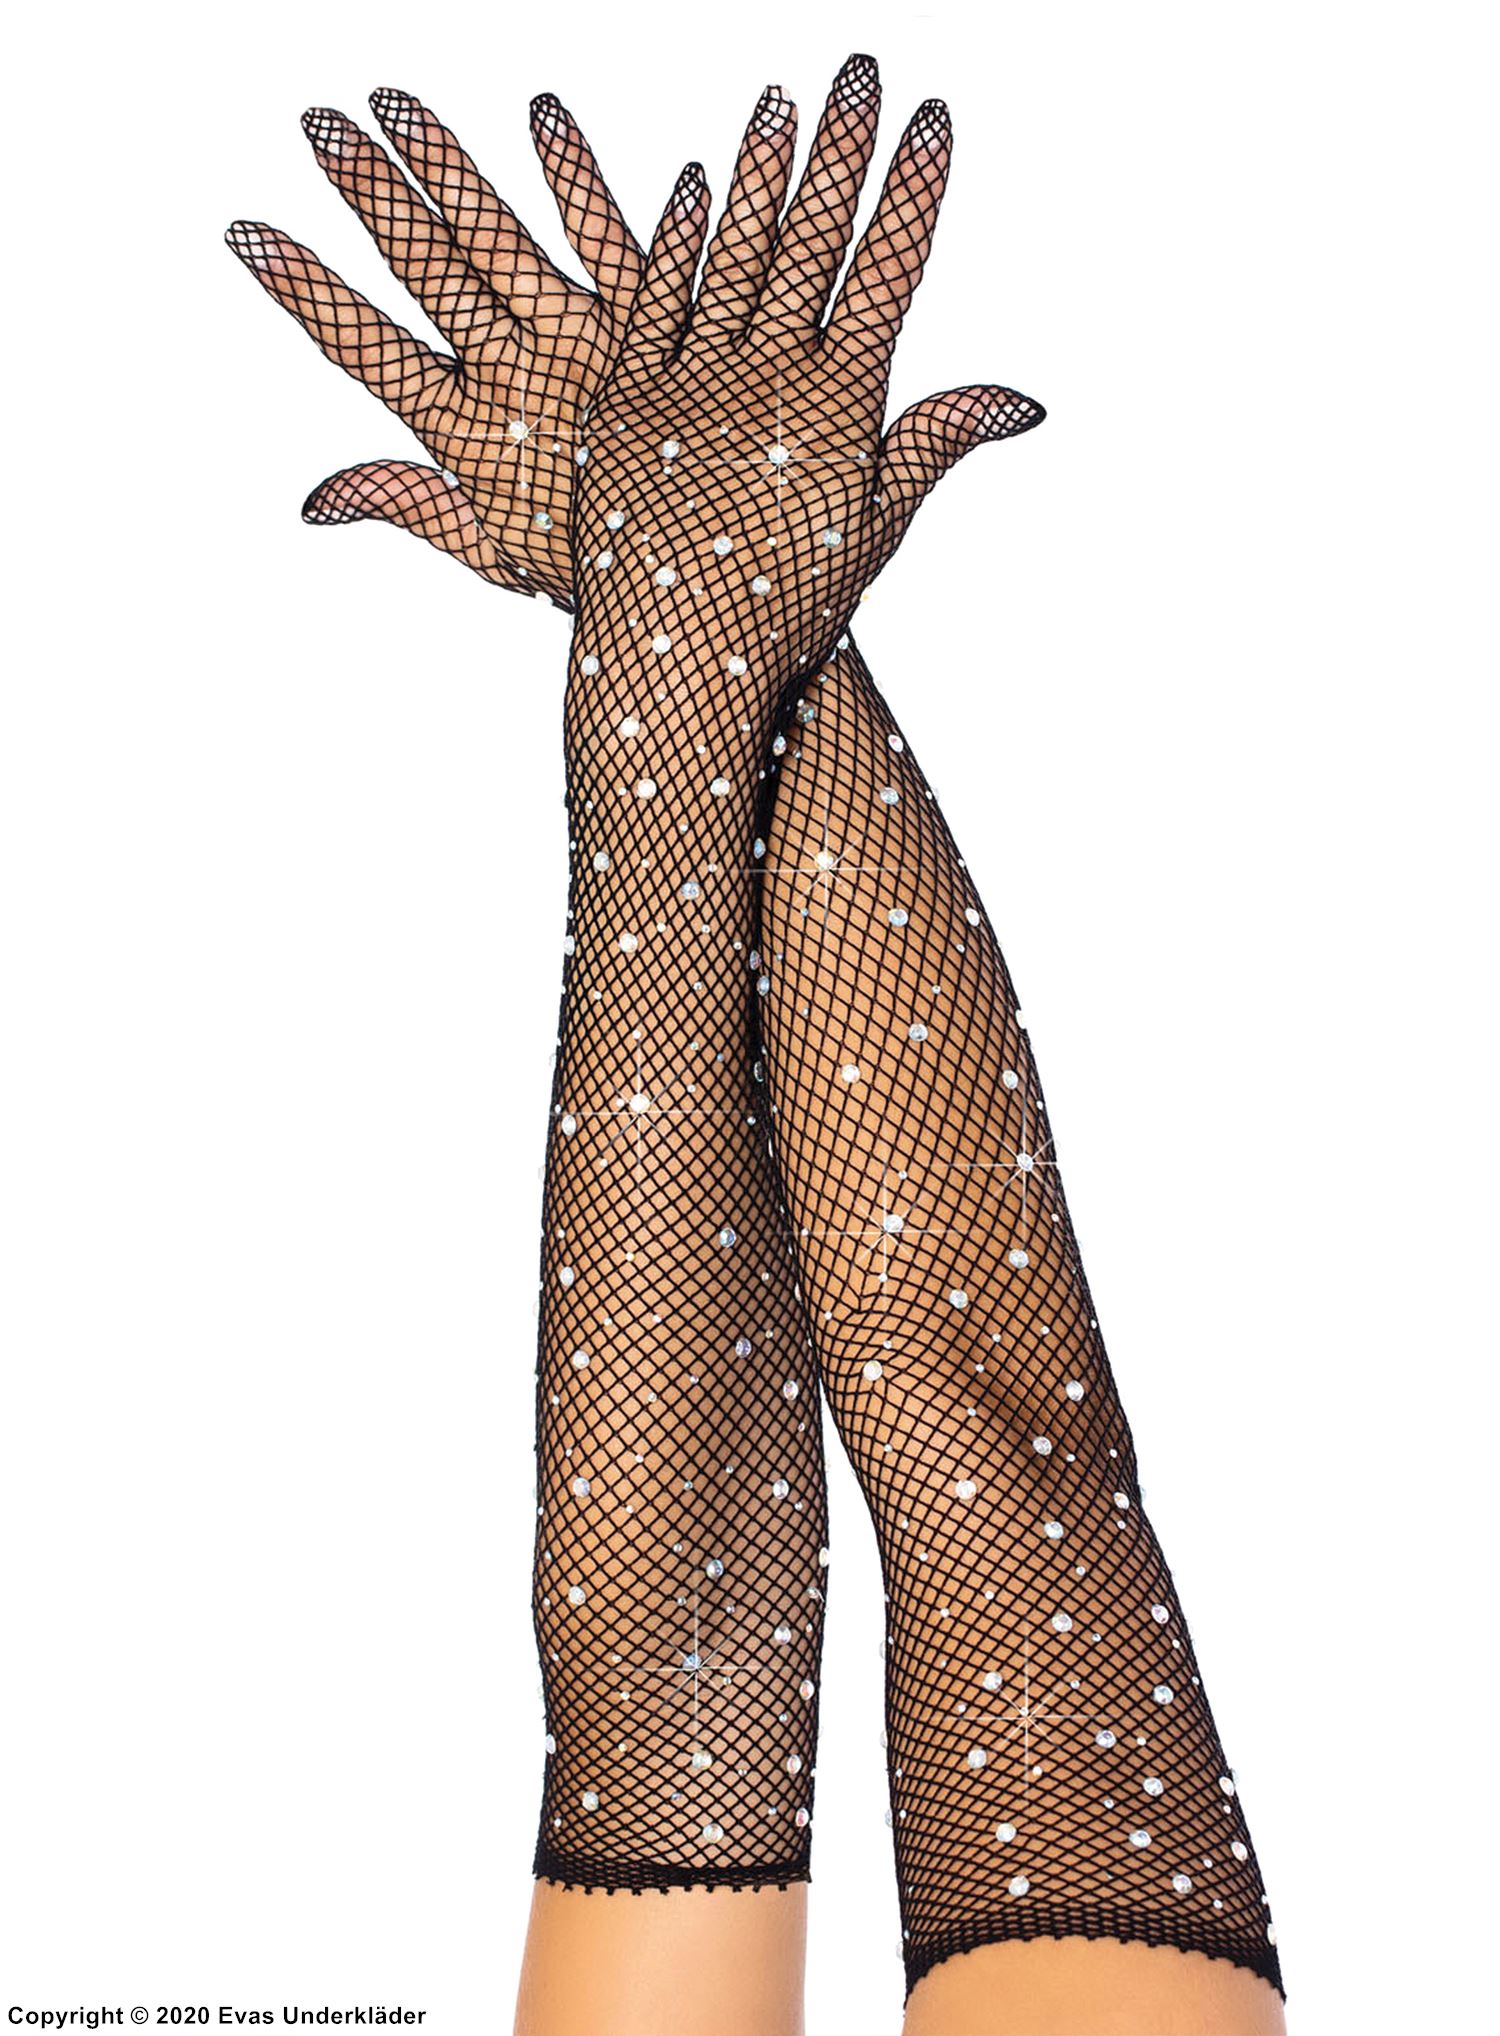 Långa handskar i nät med strass